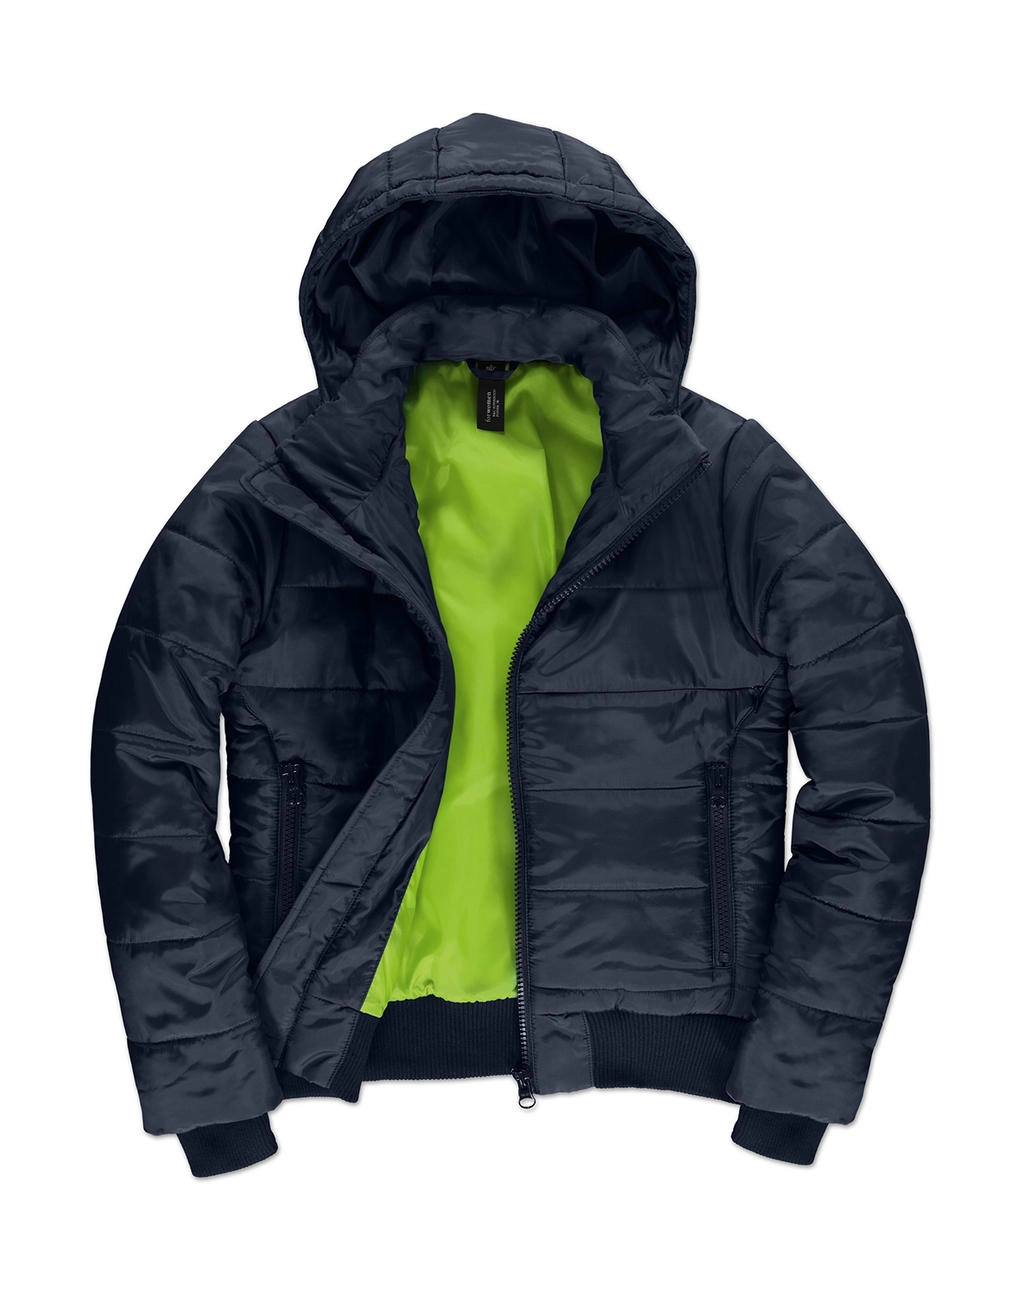 Superhood/women Jacket zum Besticken und Bedrucken in der Farbe Navy/Neon Green mit Ihren Logo, Schriftzug oder Motiv.